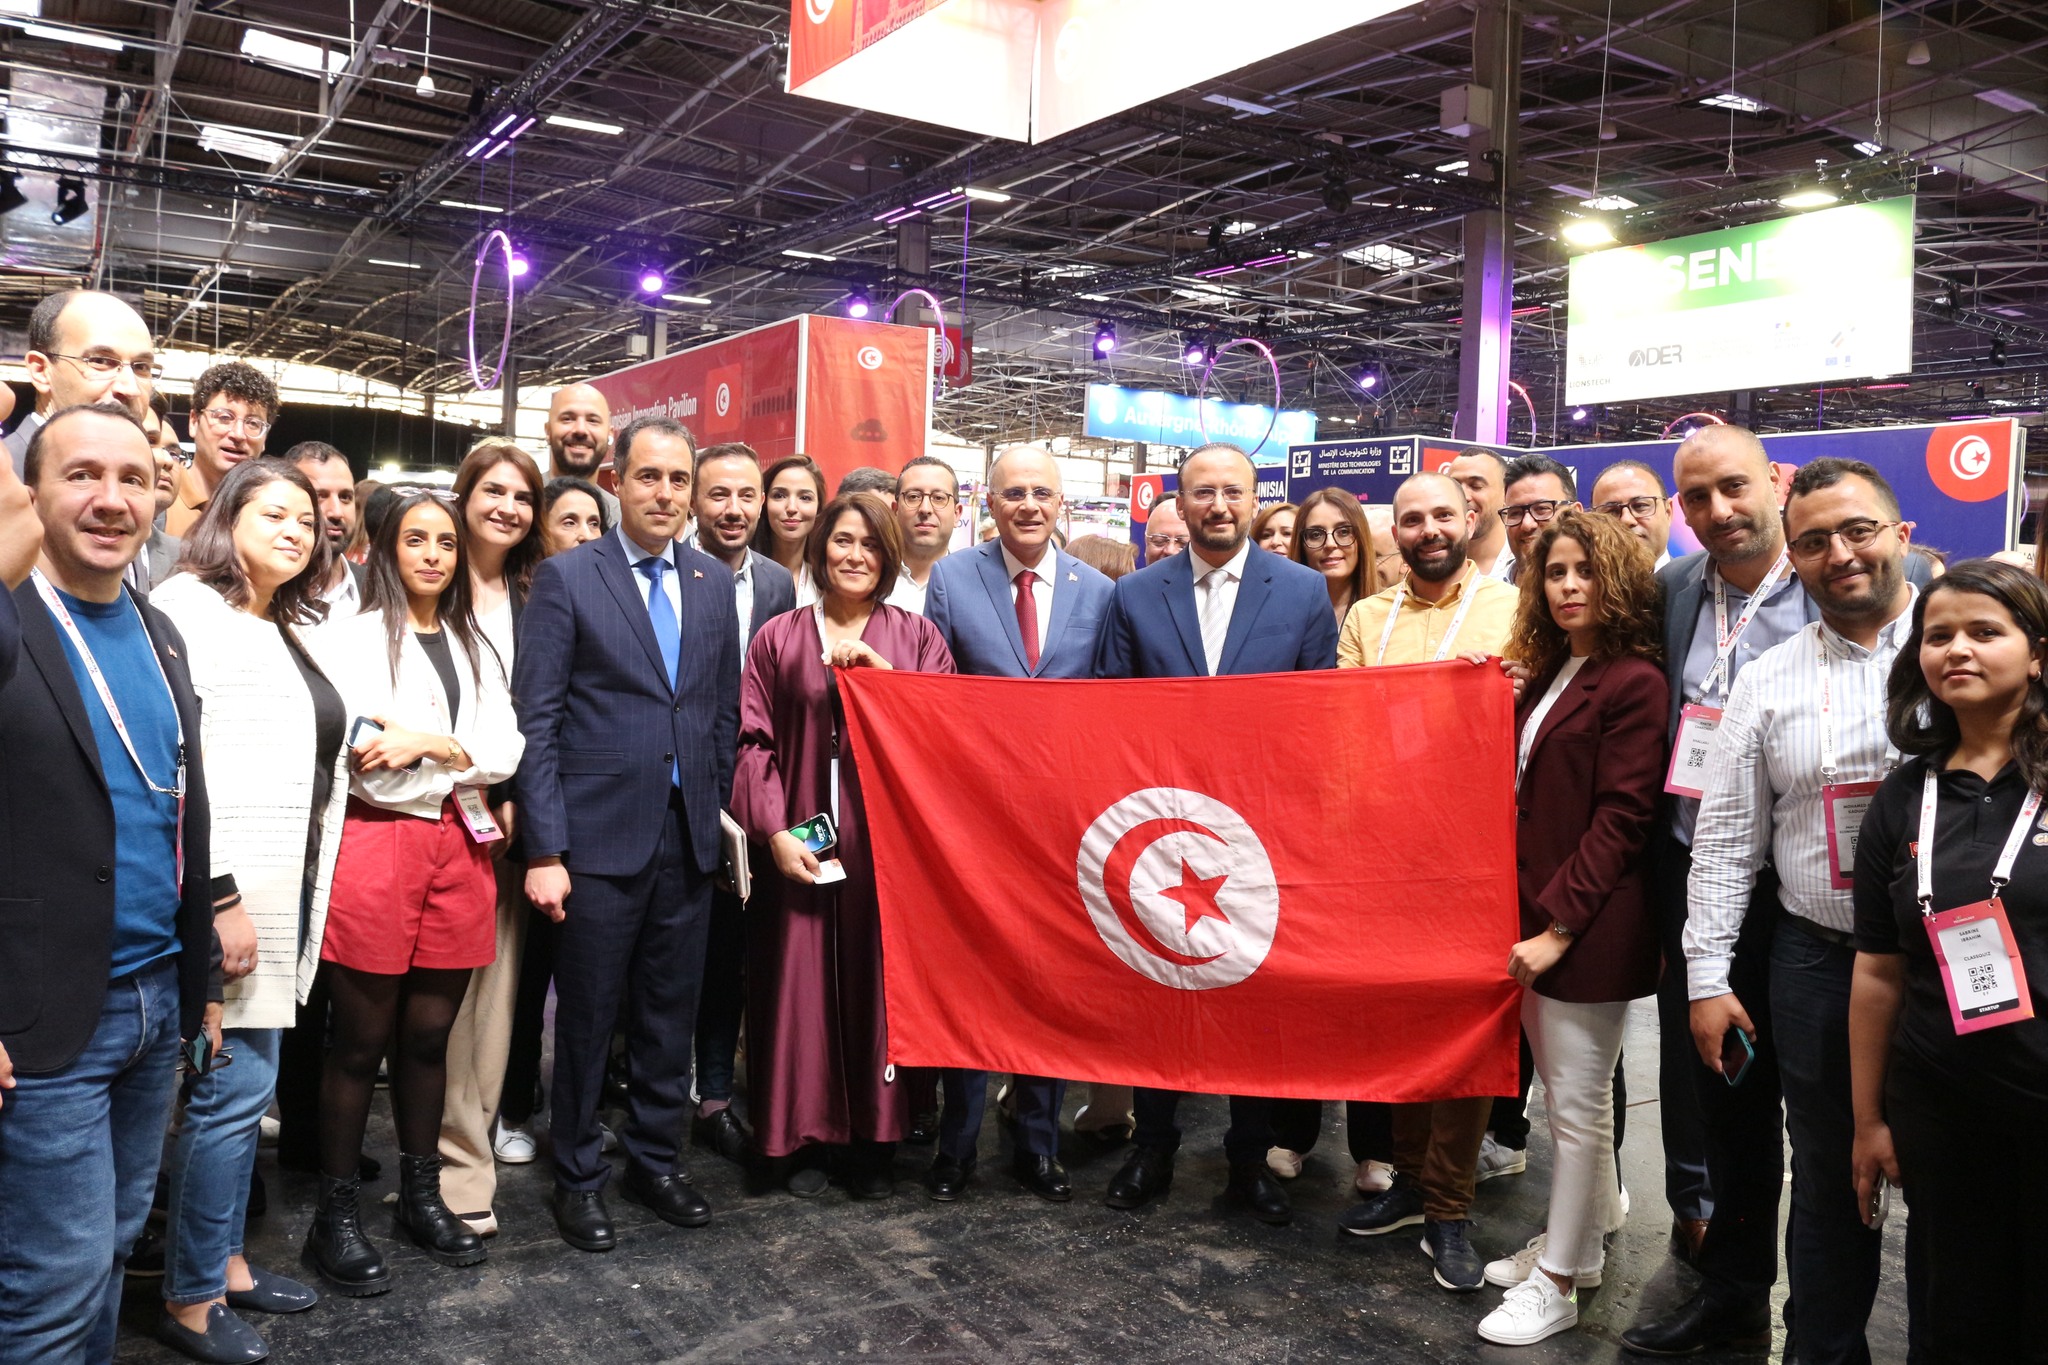 خلال صالون "فيفا تاك" بباريس.. وزير تكنولوجيات الاتصال يؤكد الحرص على تشريك المؤسسات التونسية الناشئة لاكتساح الأسواق العالمية